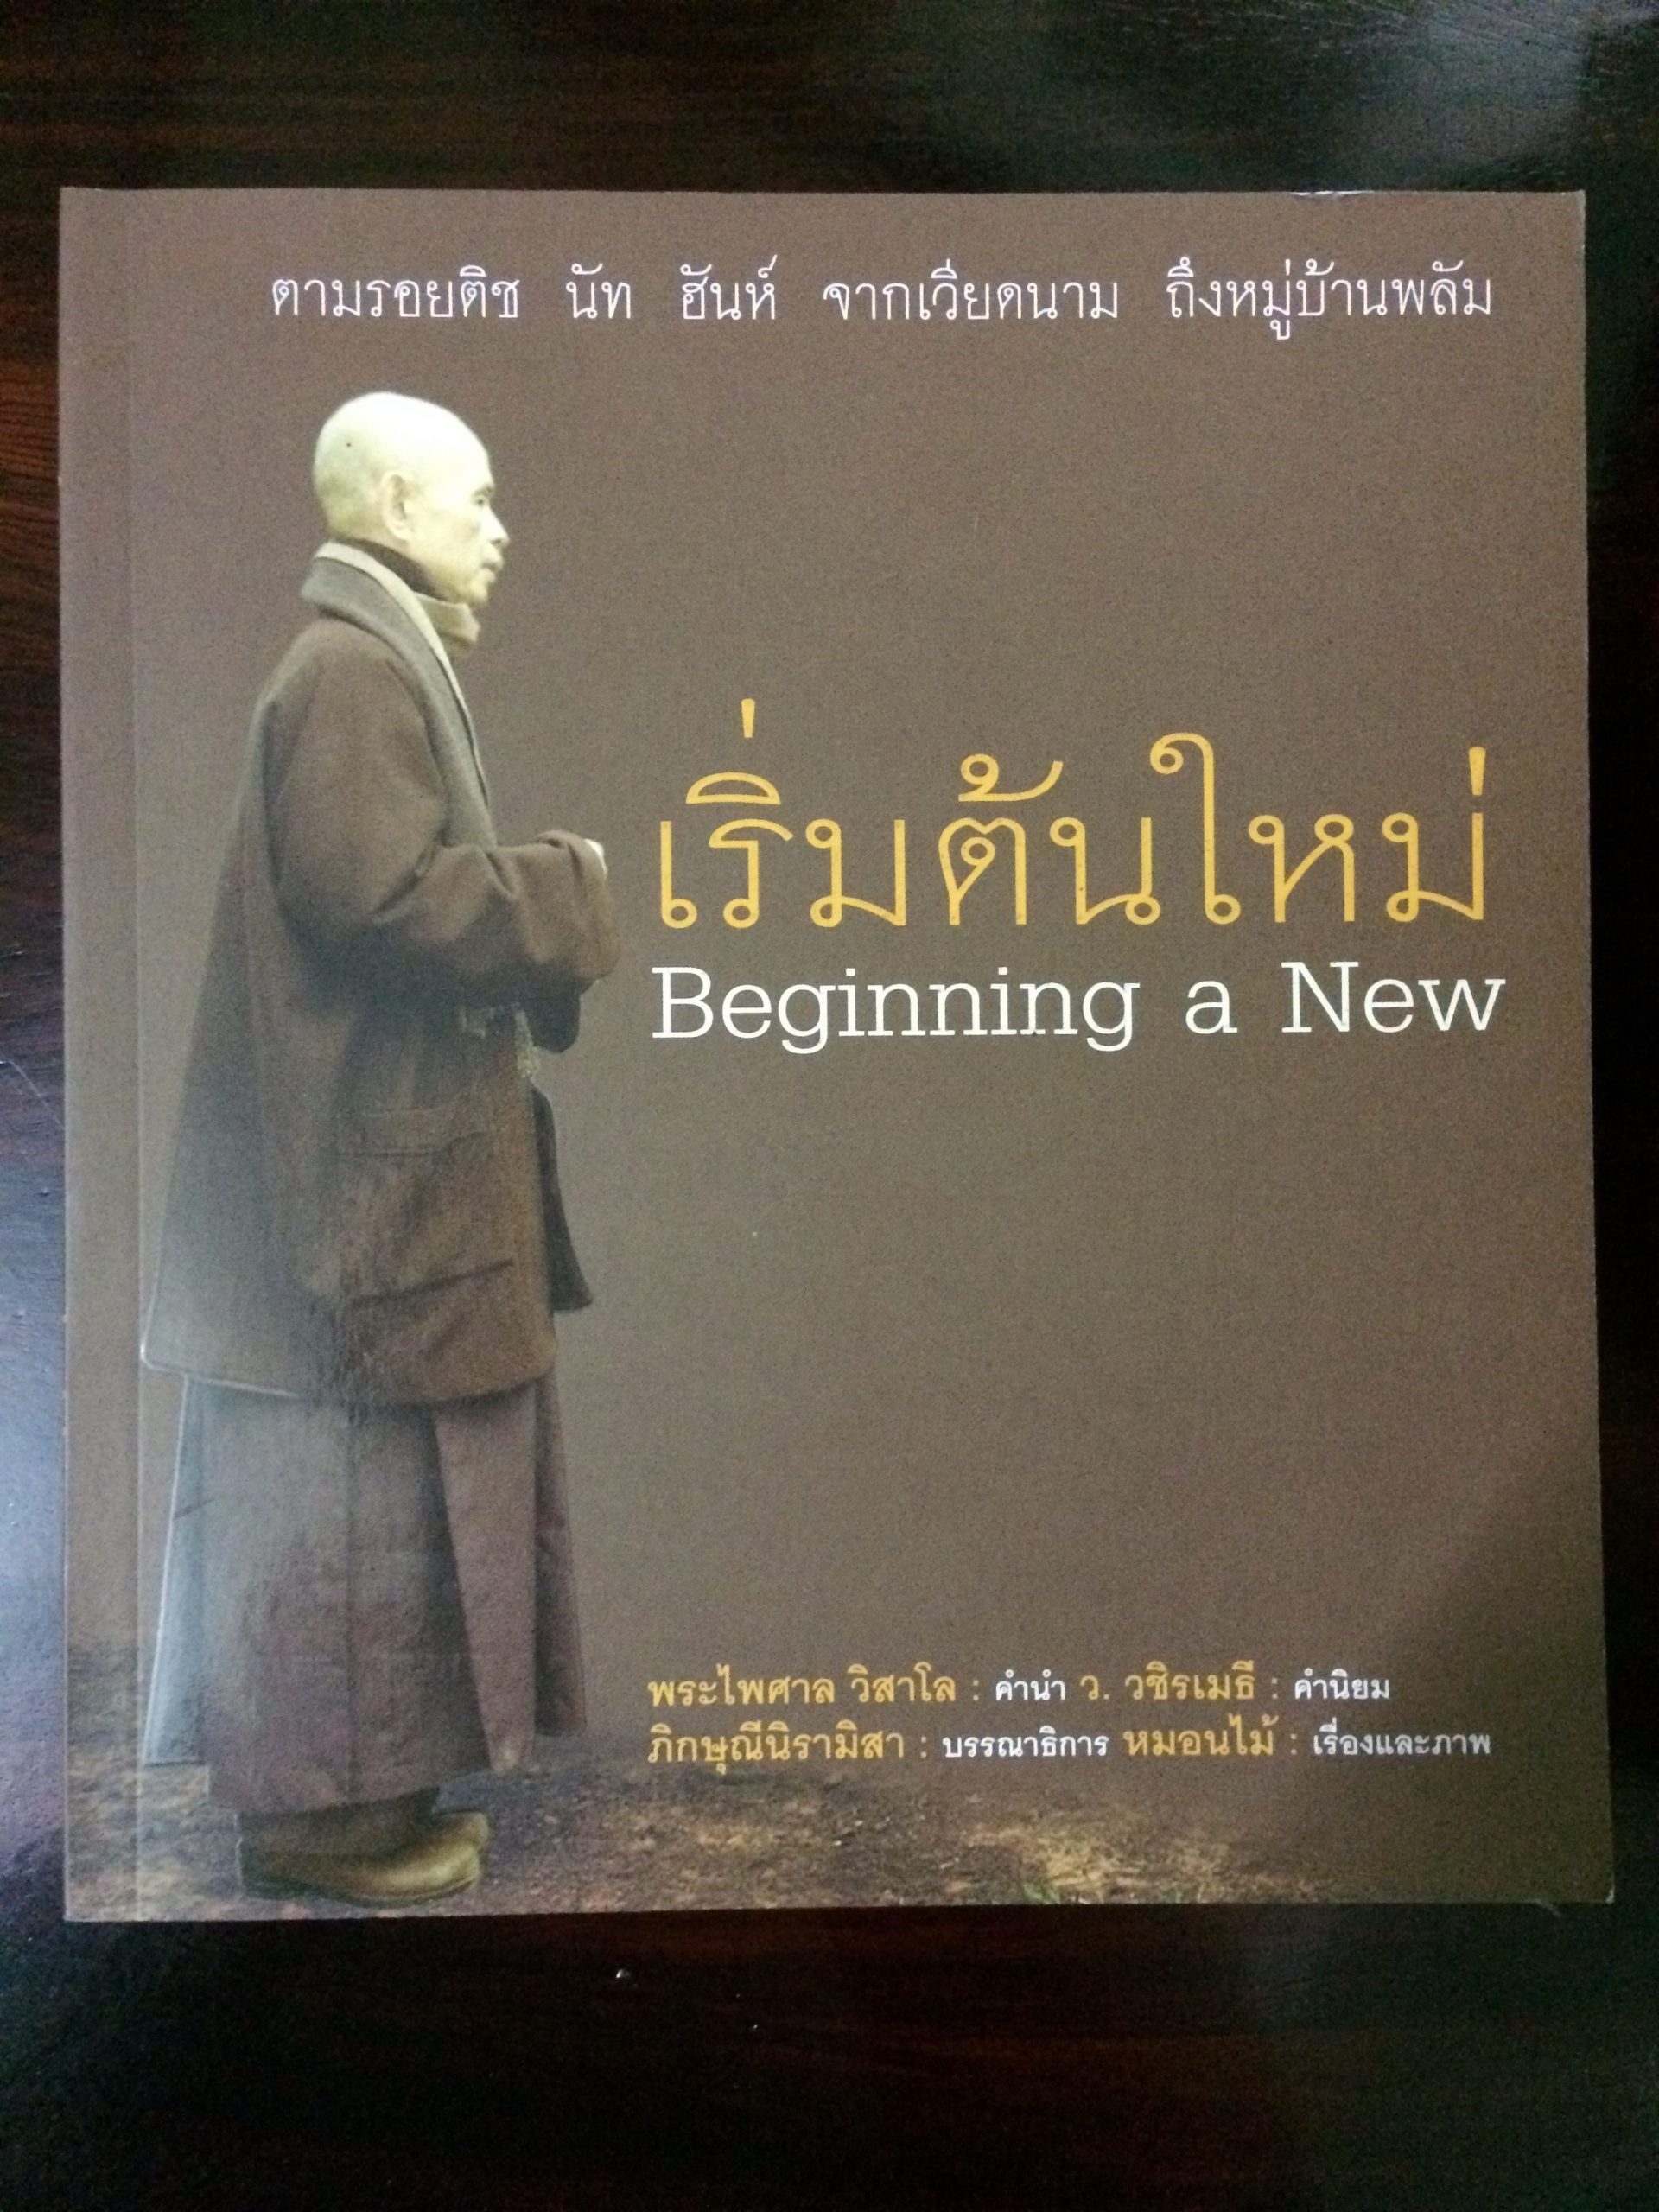 "เริ่มต้นใหม่" เขียนโดย หมอนไม้ หนังสือที่ทำถวายหลวงปู่ติช นัท ฮันห์ และหมู่บ้านพลัม ทั้งหมด